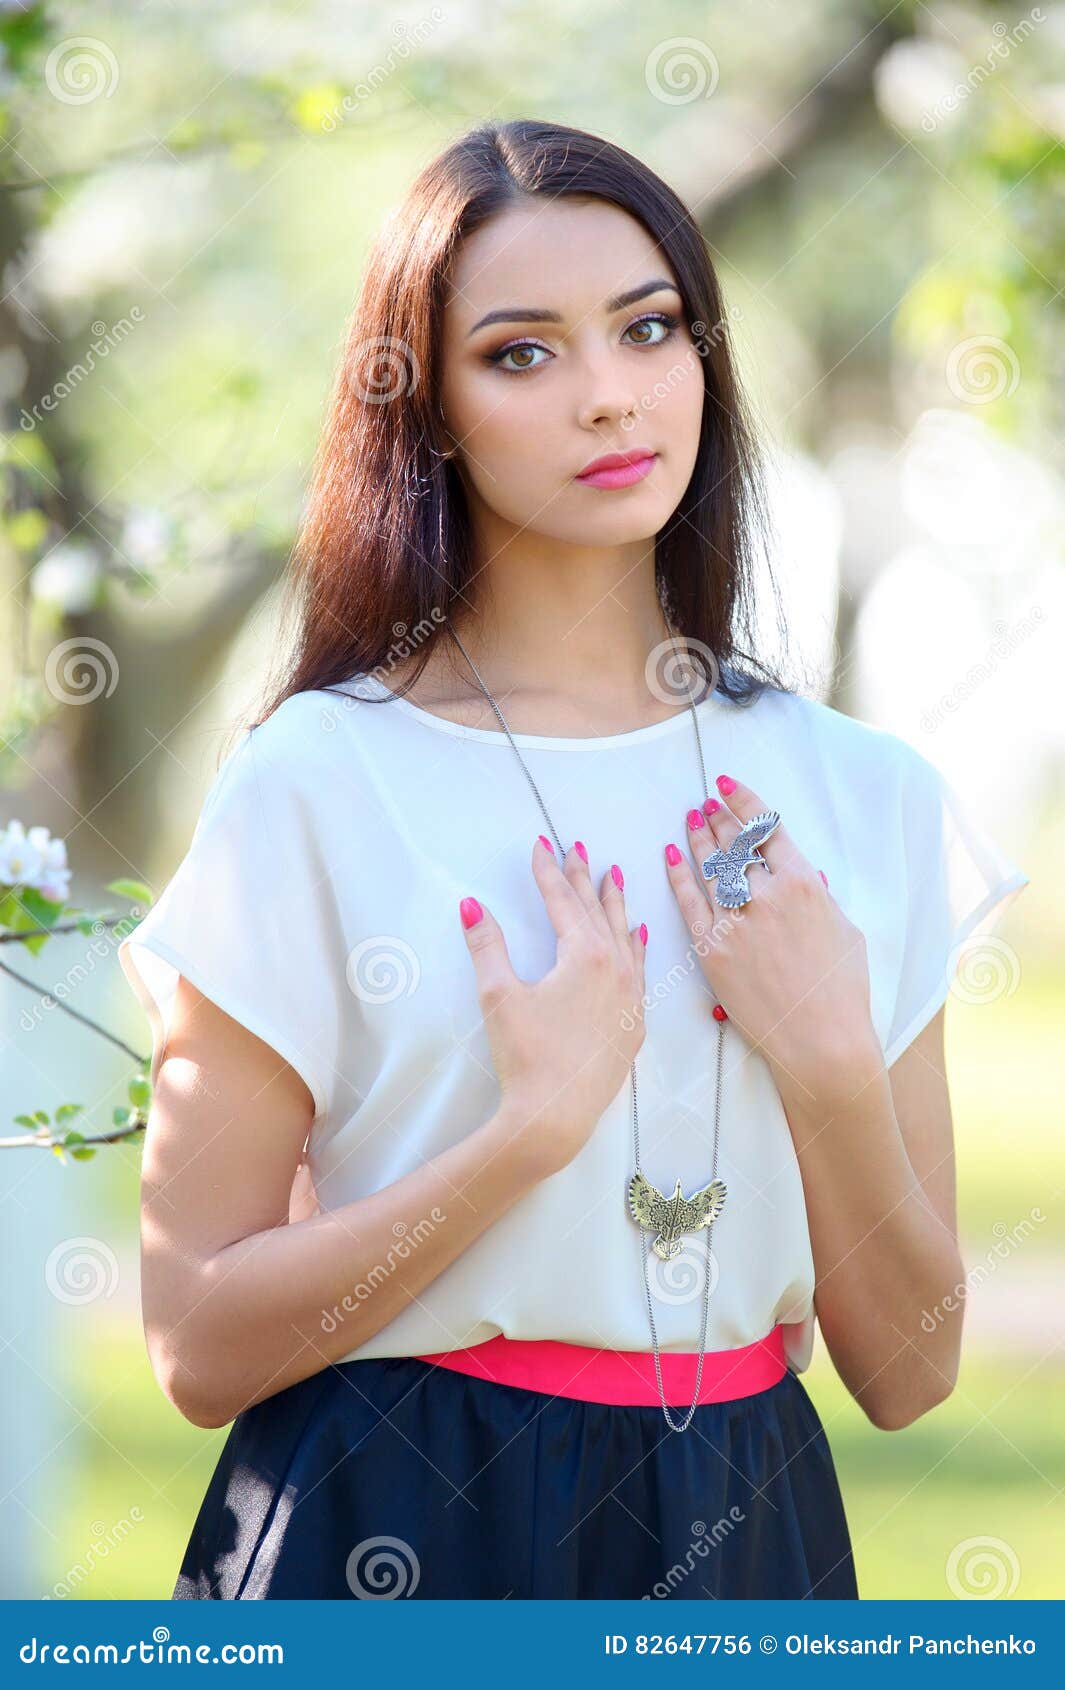 Collar Joyero Y Anillo De Finger En El Modo Hermoso De La Mujer de archivo - Imagen de accesorio, perla: 82647756